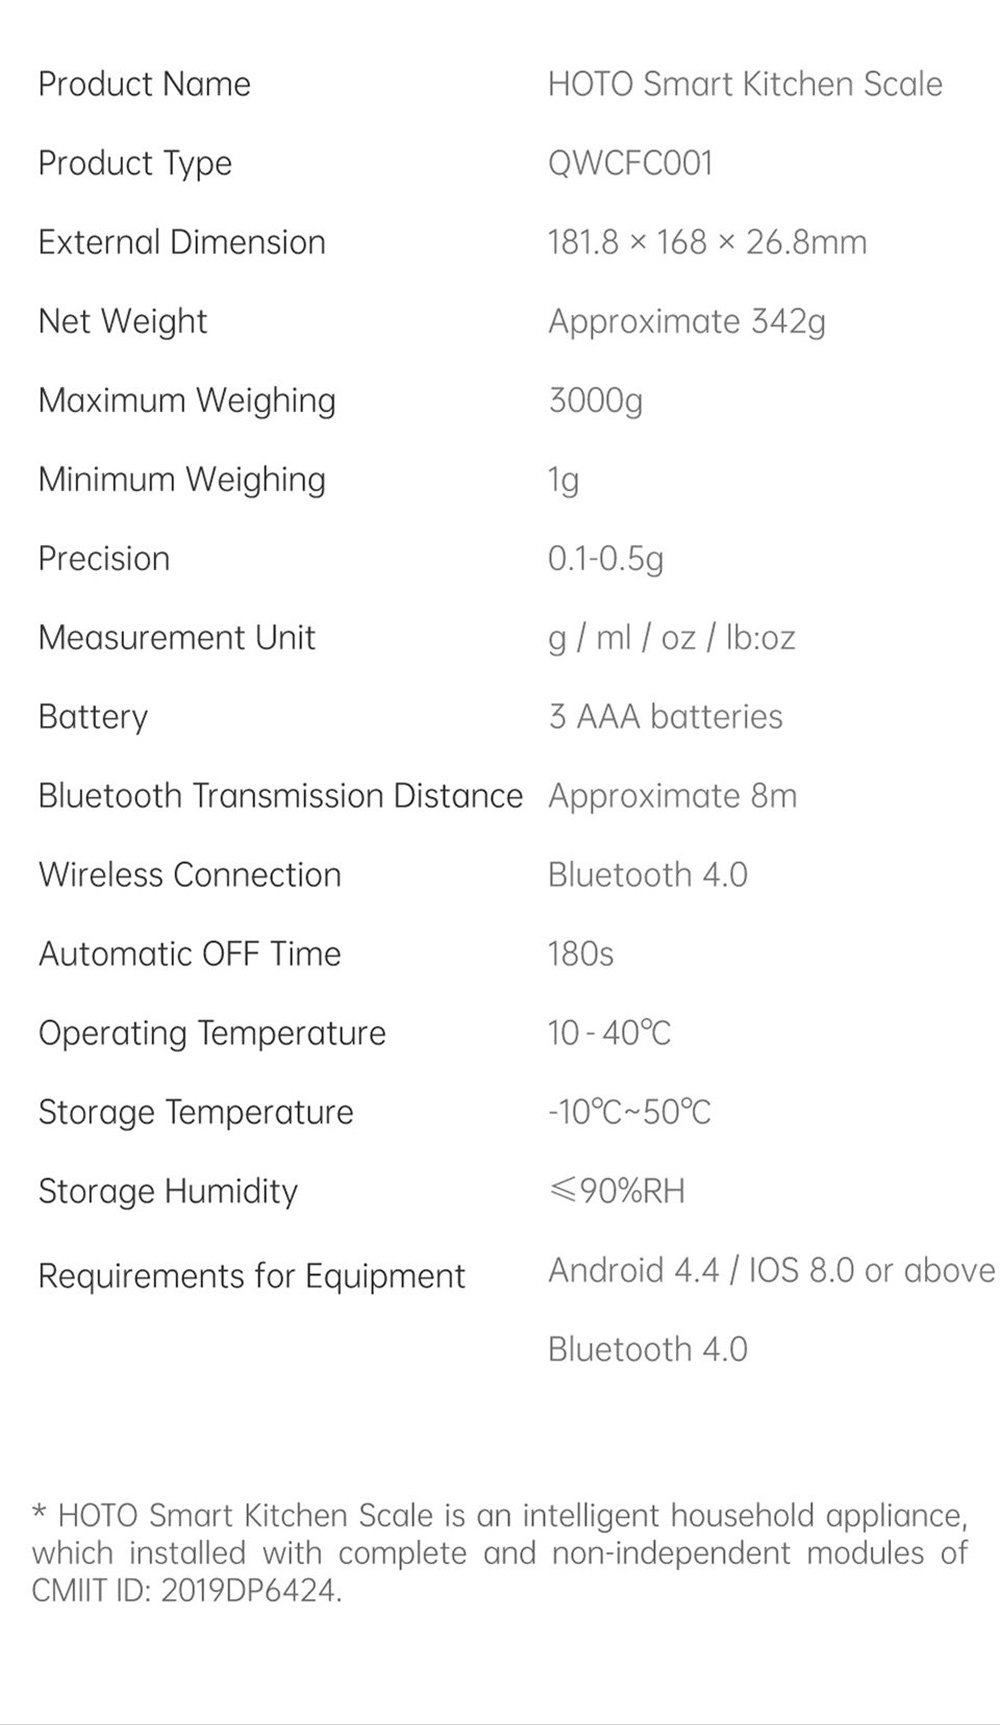 HOTO Inteligentna elektroniczna waga kuchenna Bluetooth Mijia APP Control 1-3000g Zakres ważenia z precyzyjnym czujnikiem 0.1g